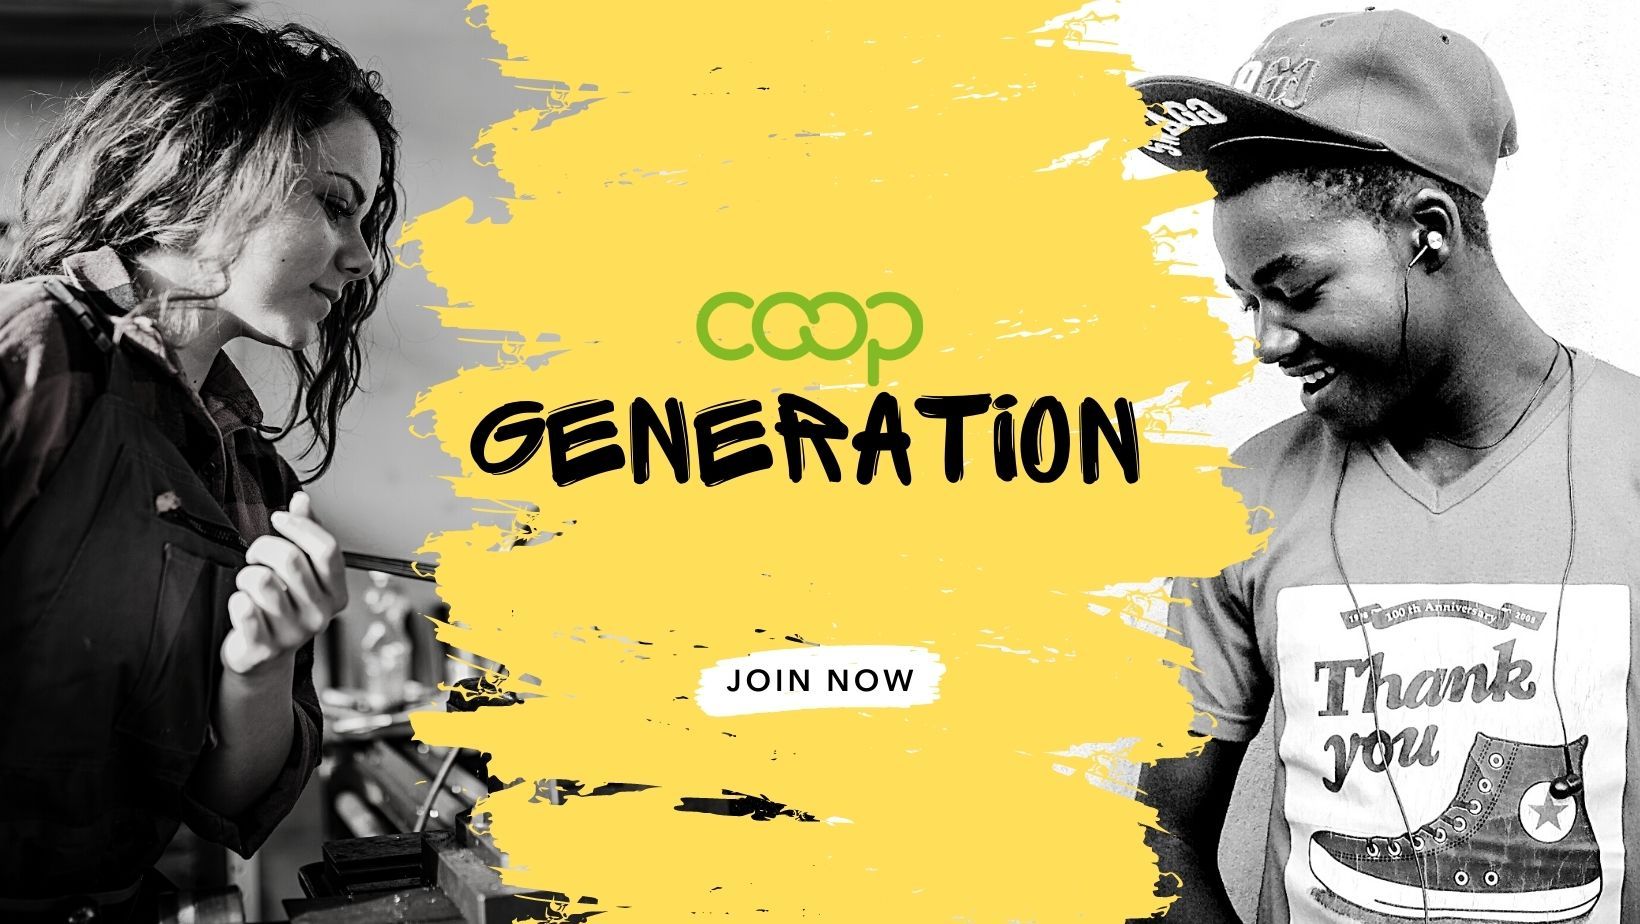 Co-op Generation